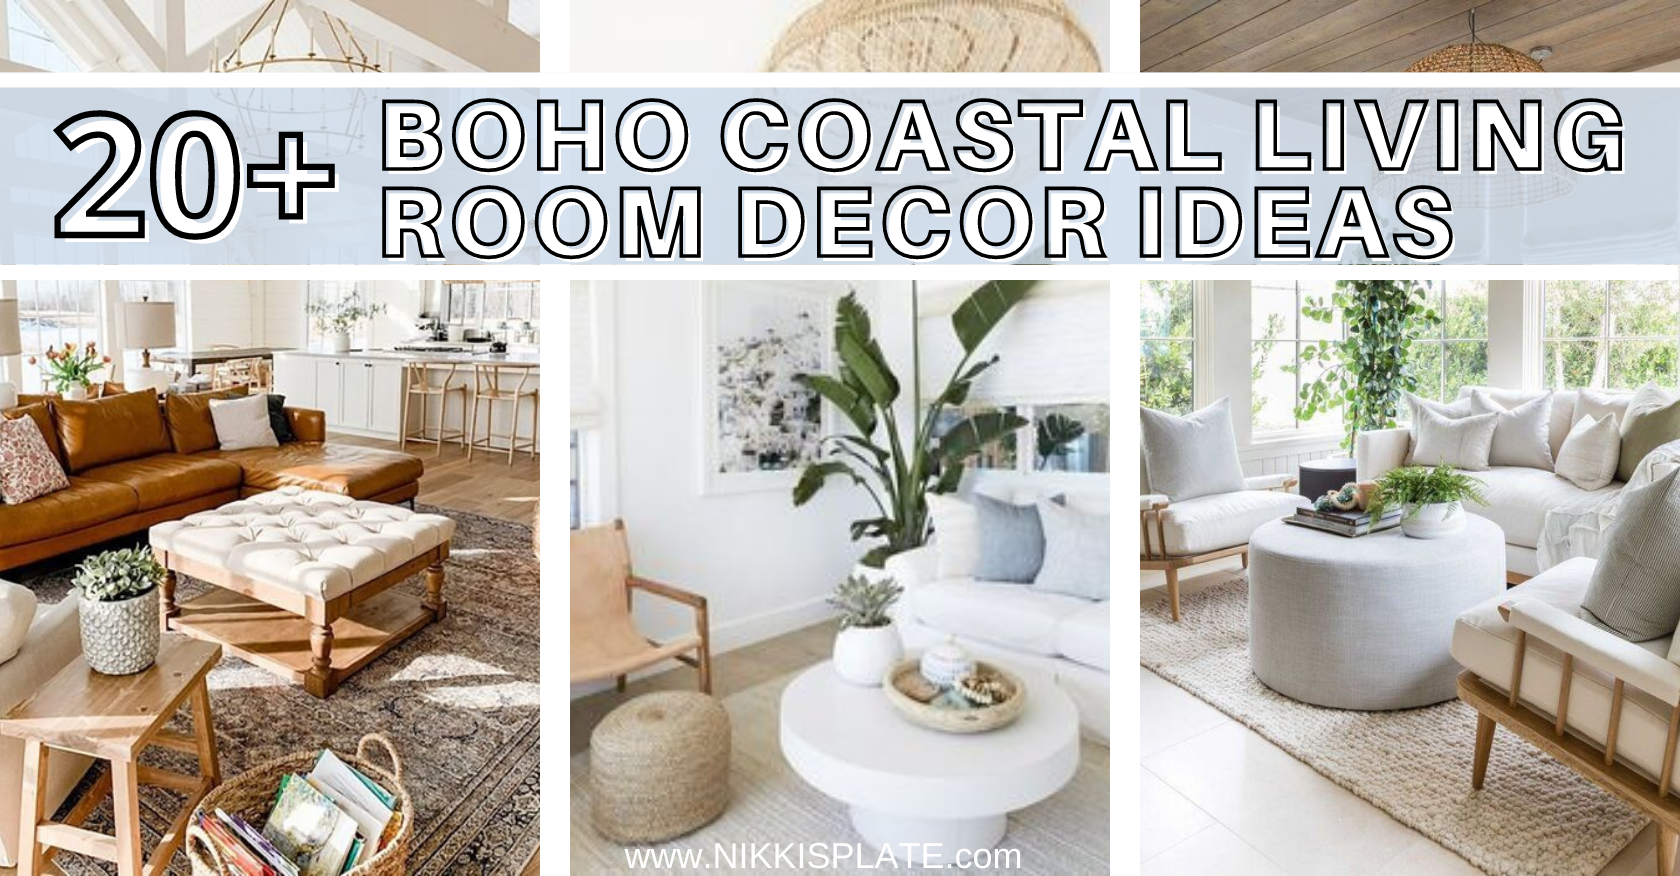 20 Boho Coastal Living Room Decor Ideas - Nikki's Plate